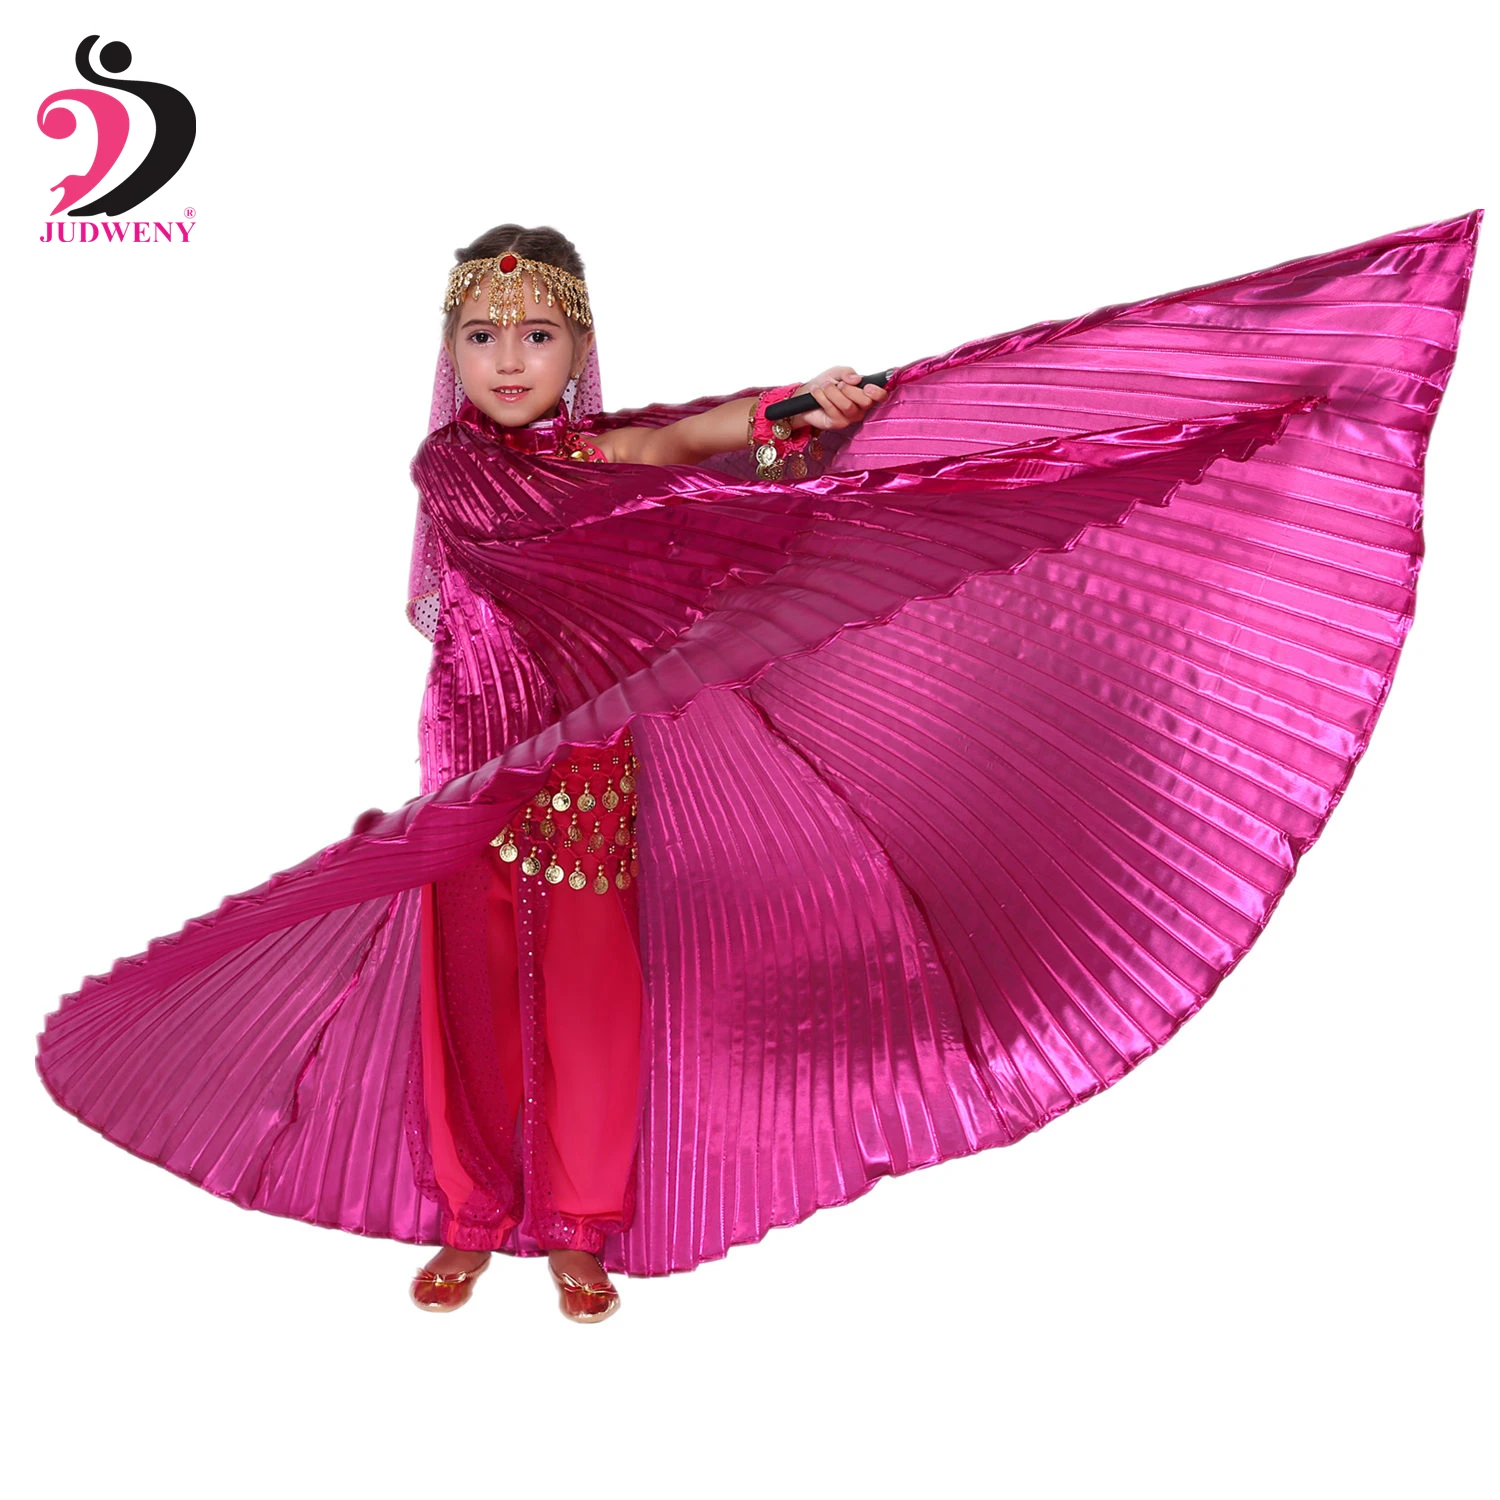 Крылья для танца живота, палочки, сумка Isis, крылья для танца живота, египетские костюмы для танца живота, набор для детей, девочек, детей, золото, 10 цветов